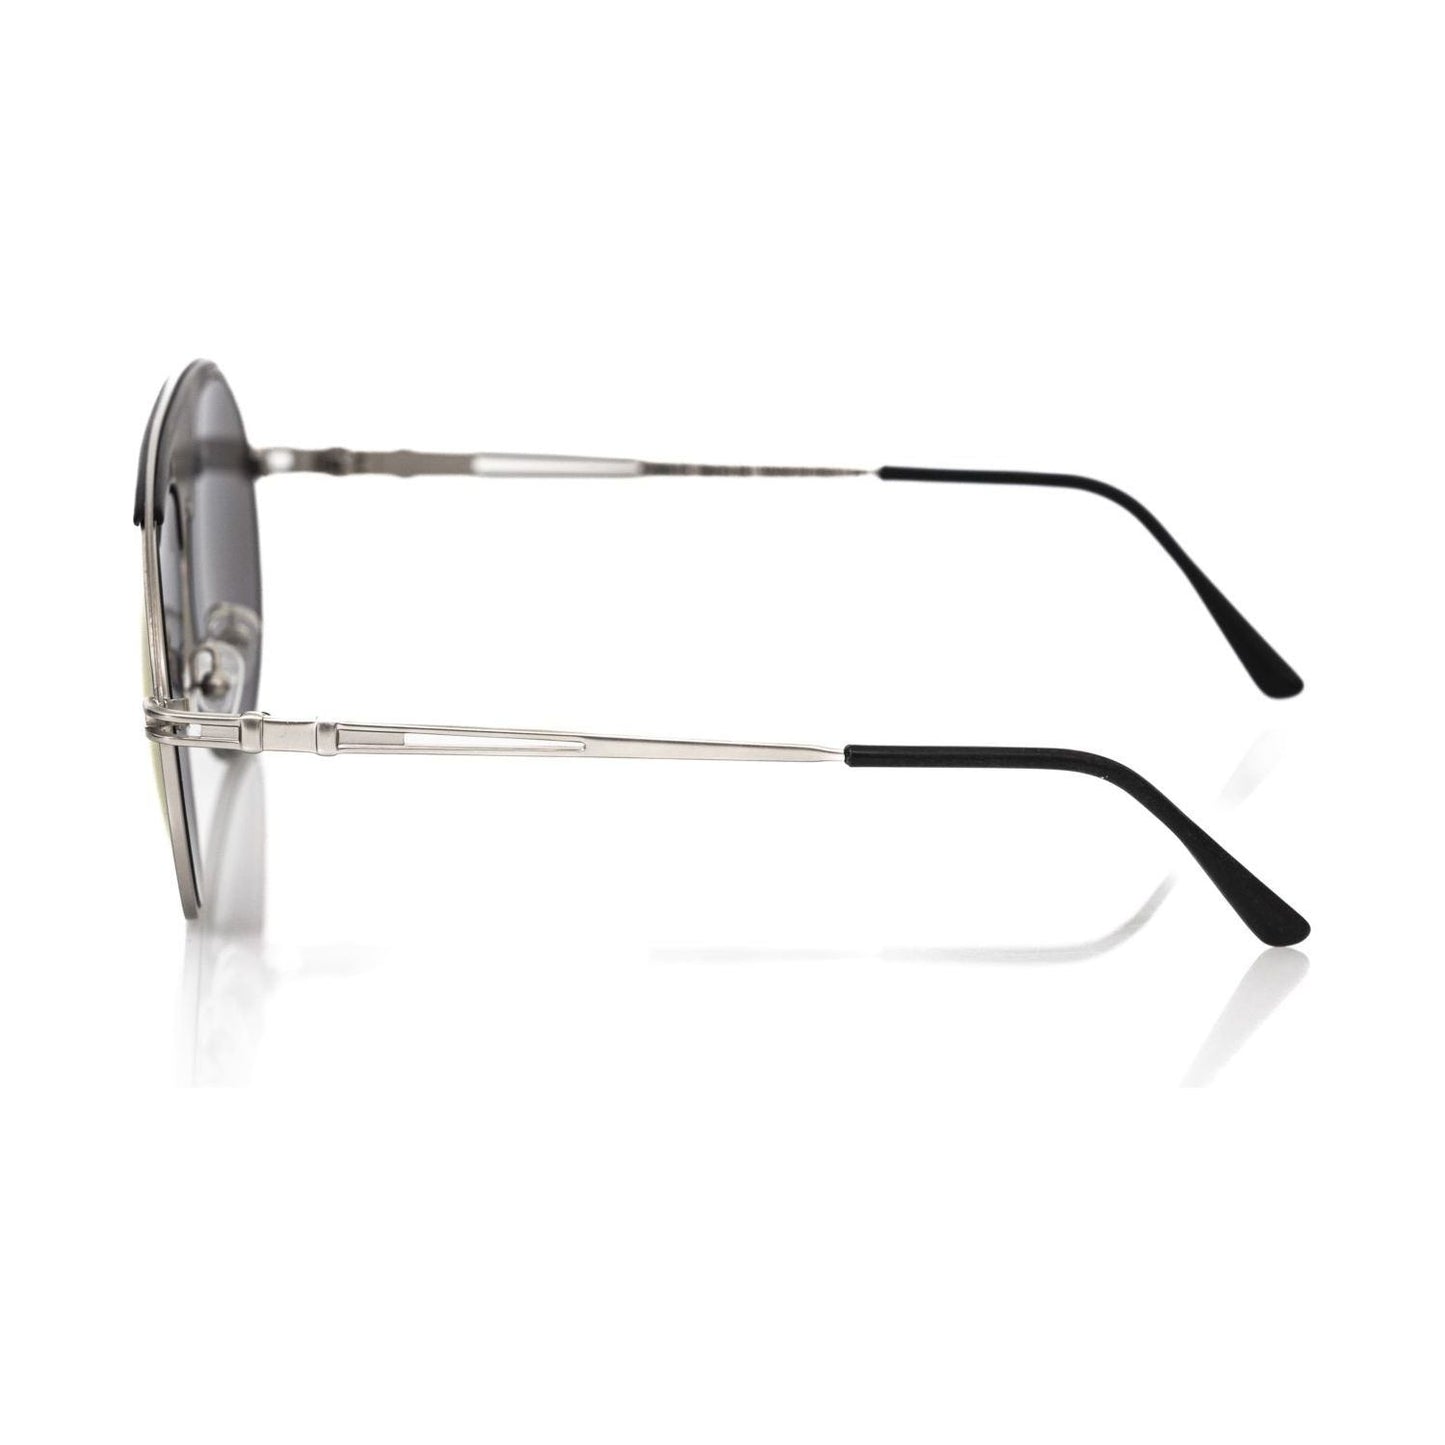 Frankie Morello Chic Shield Smoke Gray Lens Sunglasses multicolor-metallic-fibre-sunglasses